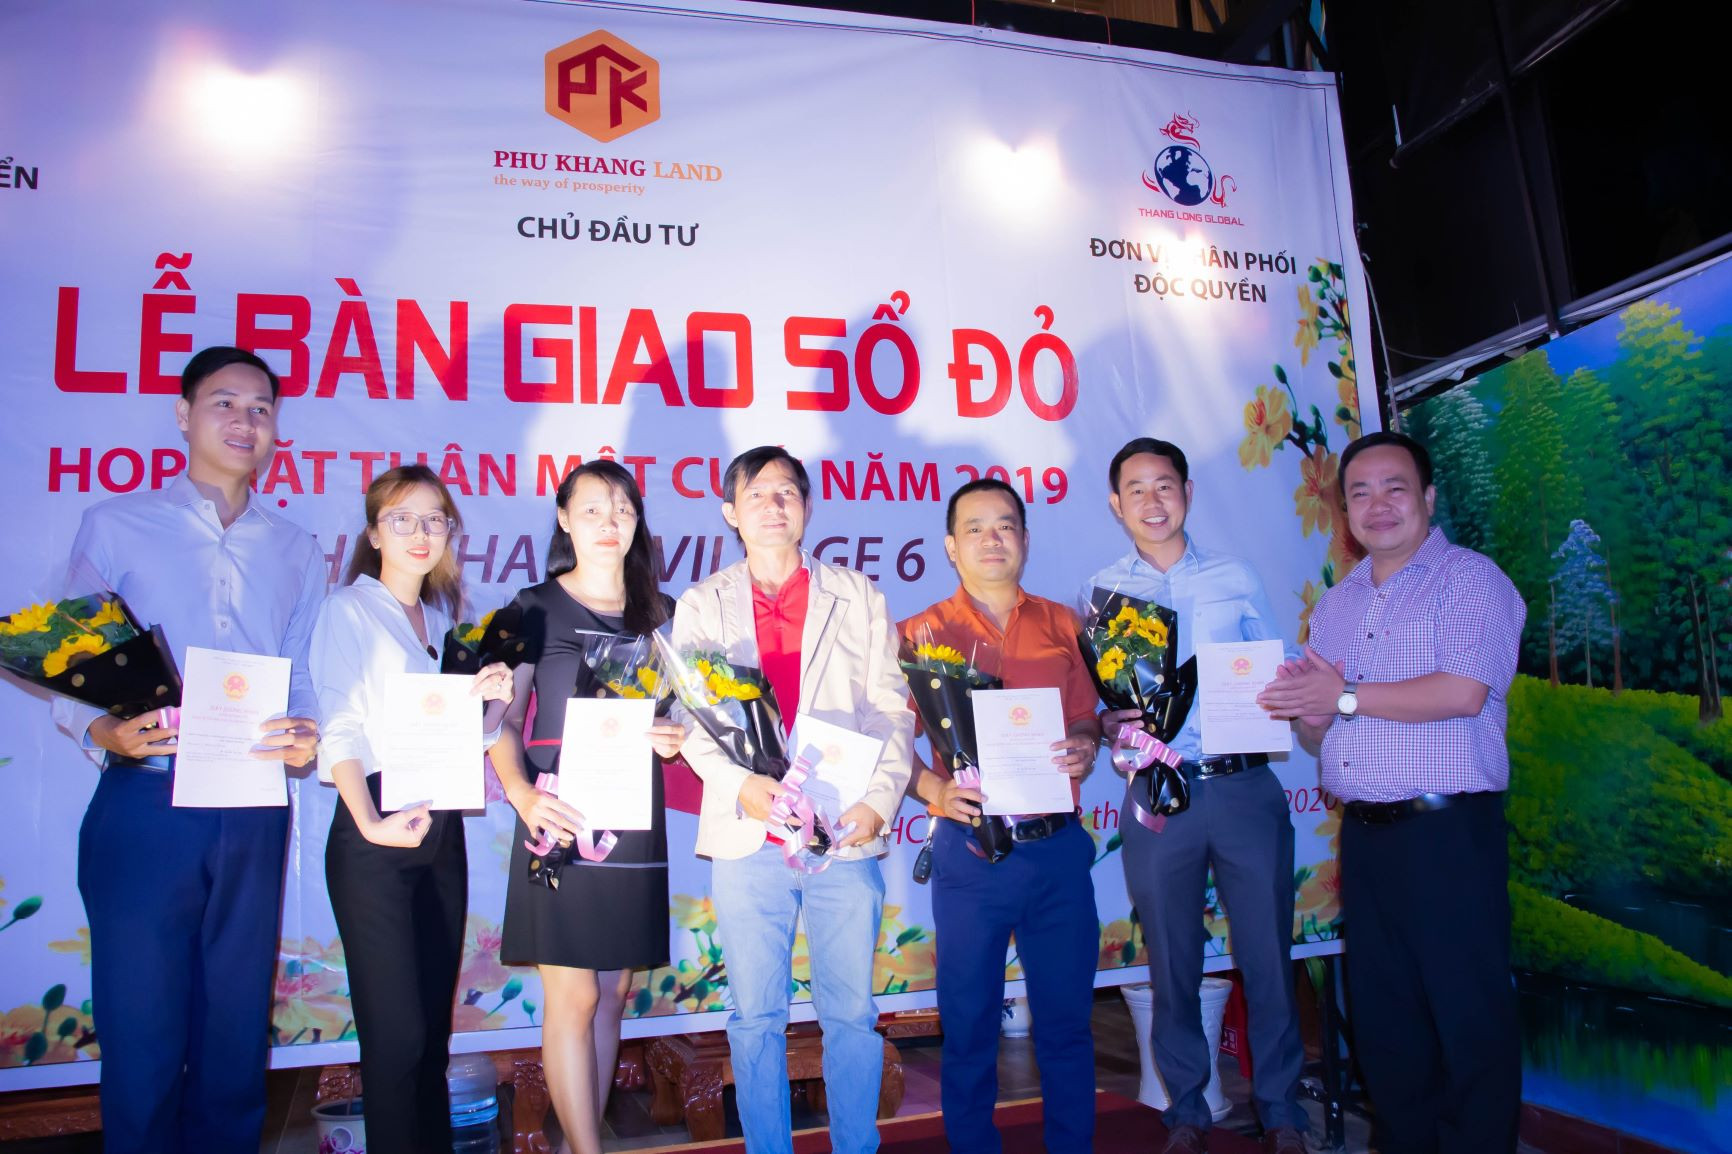 Bất động sản Biên Hòa - Đồng Nai 2020: Cú hích từ hạ tầng